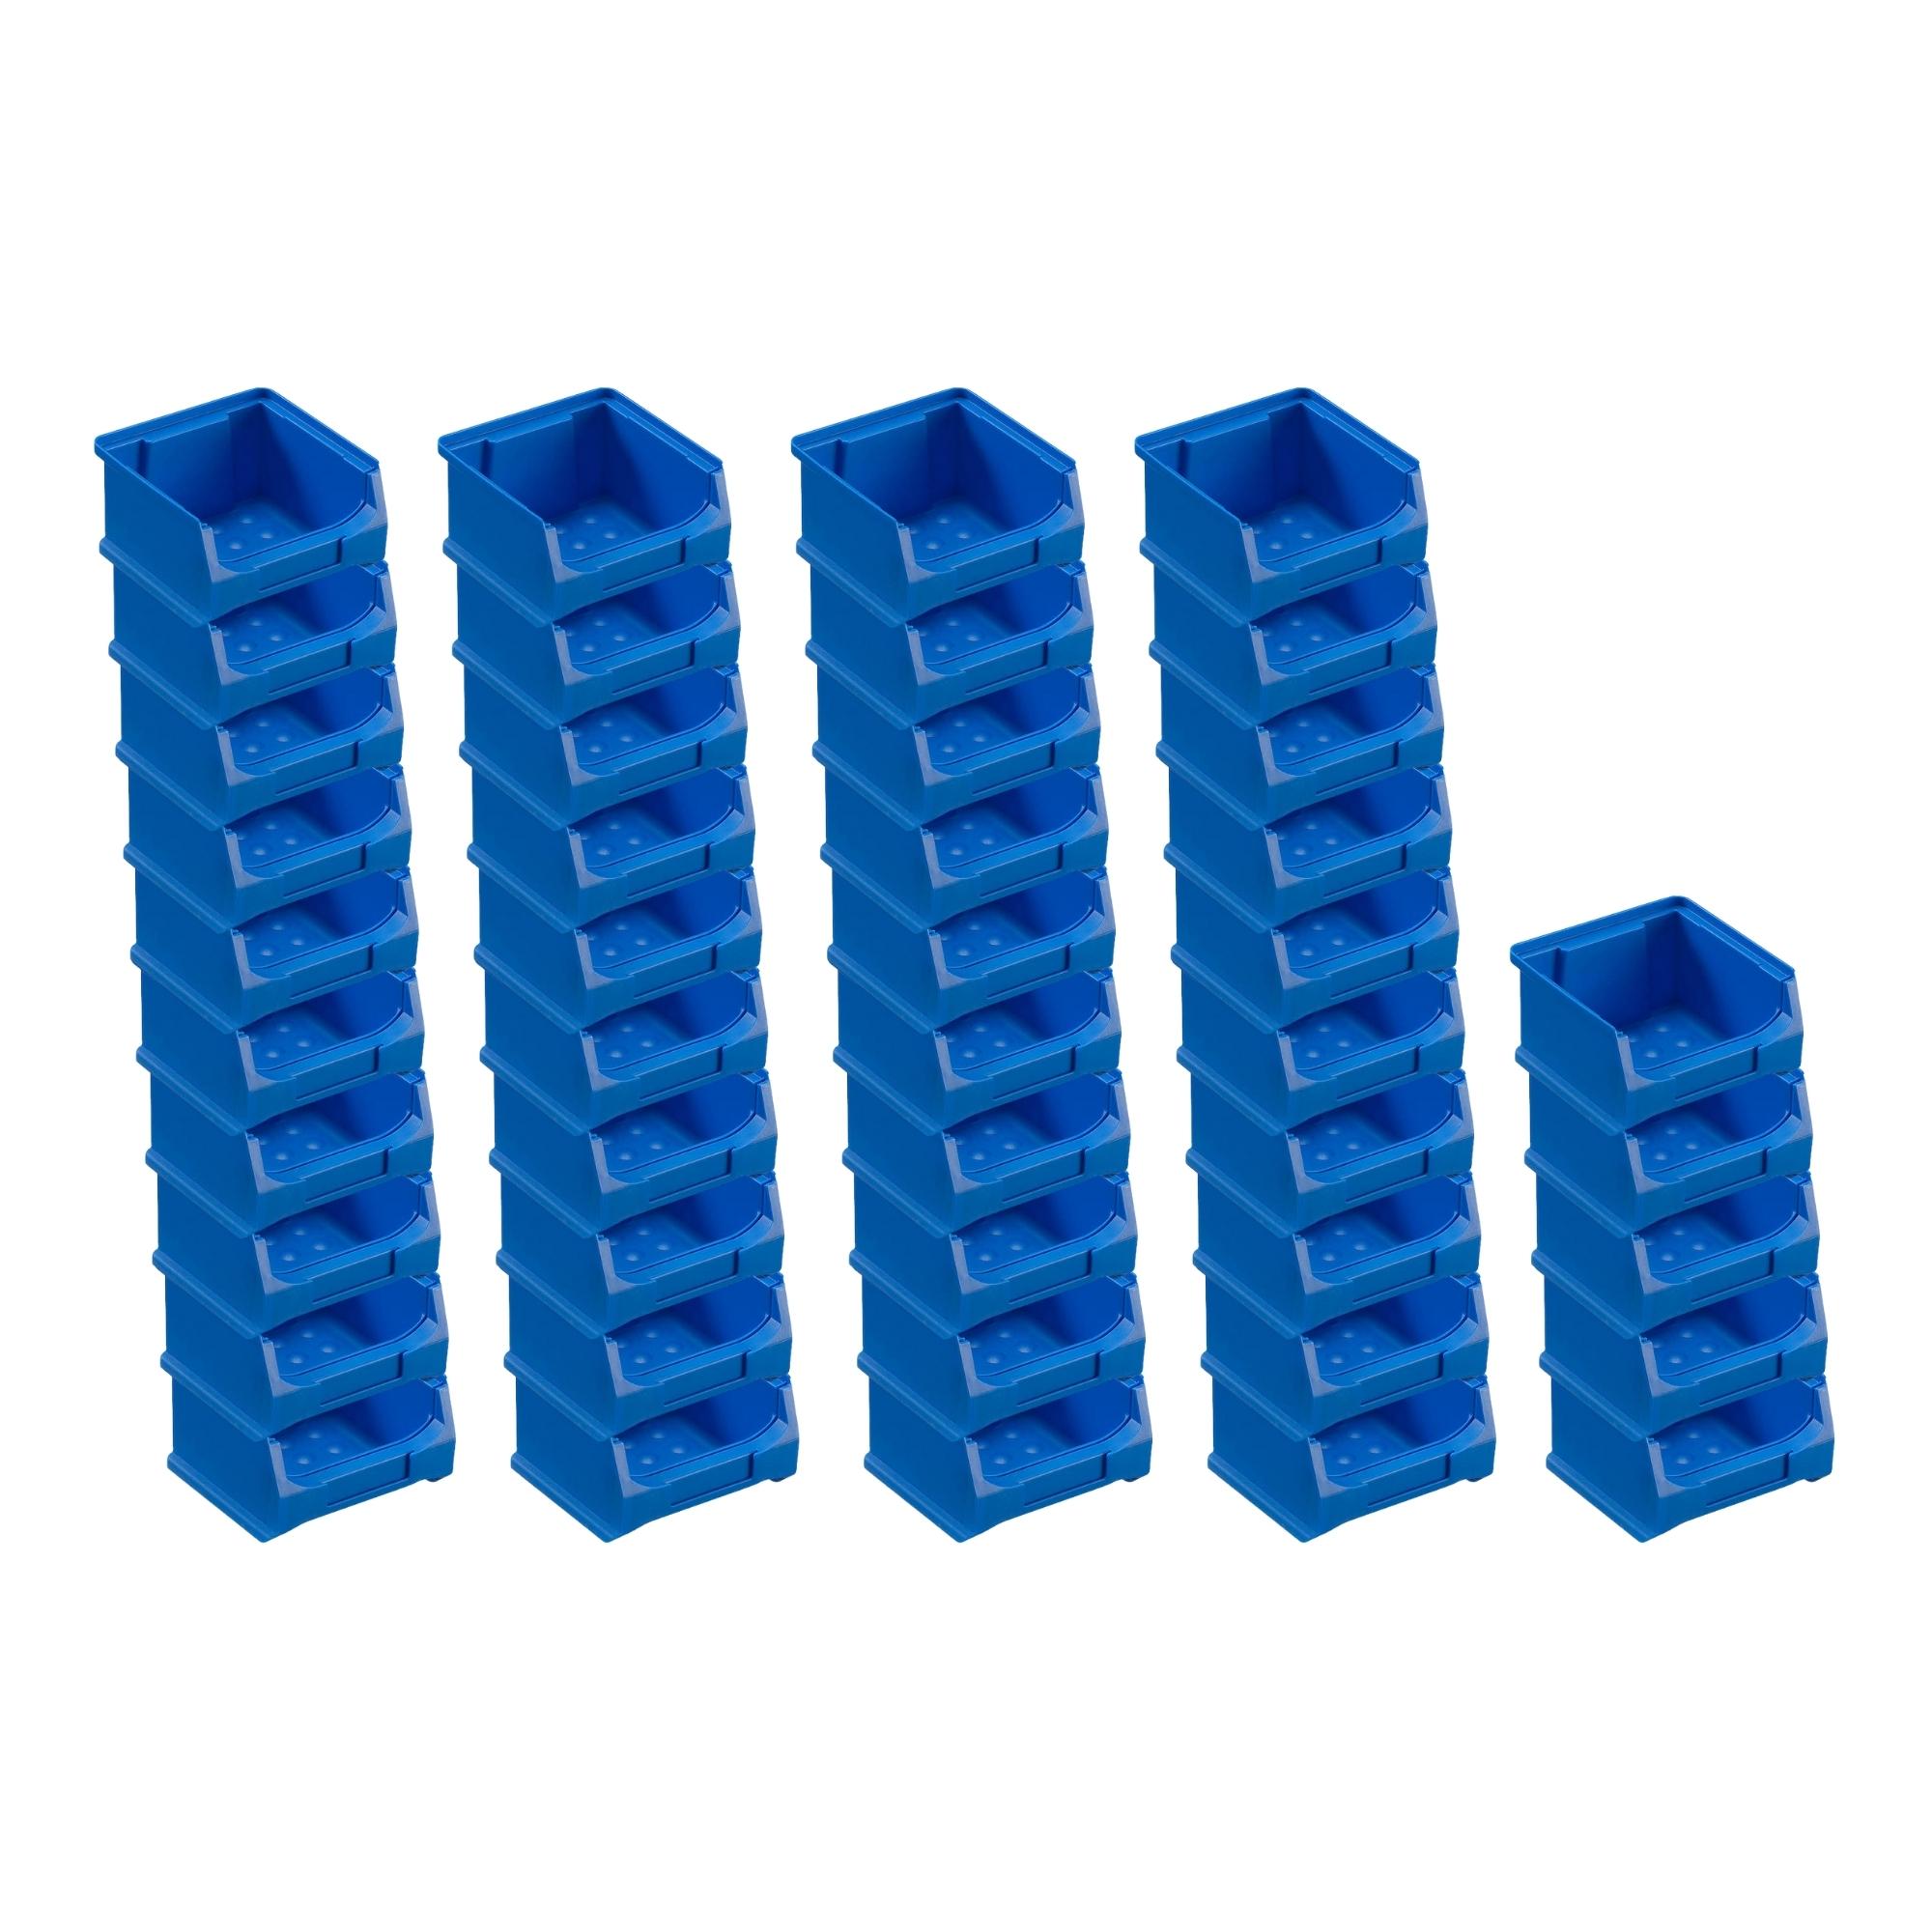 Trägersystem Rote Systemplatte mit 45x blauen Sichtlagerboxen 1.0 | Maße HxB 50x100cm | Sichtlagerbox, Sichtlagerbehälter, Sichtlagerkasten